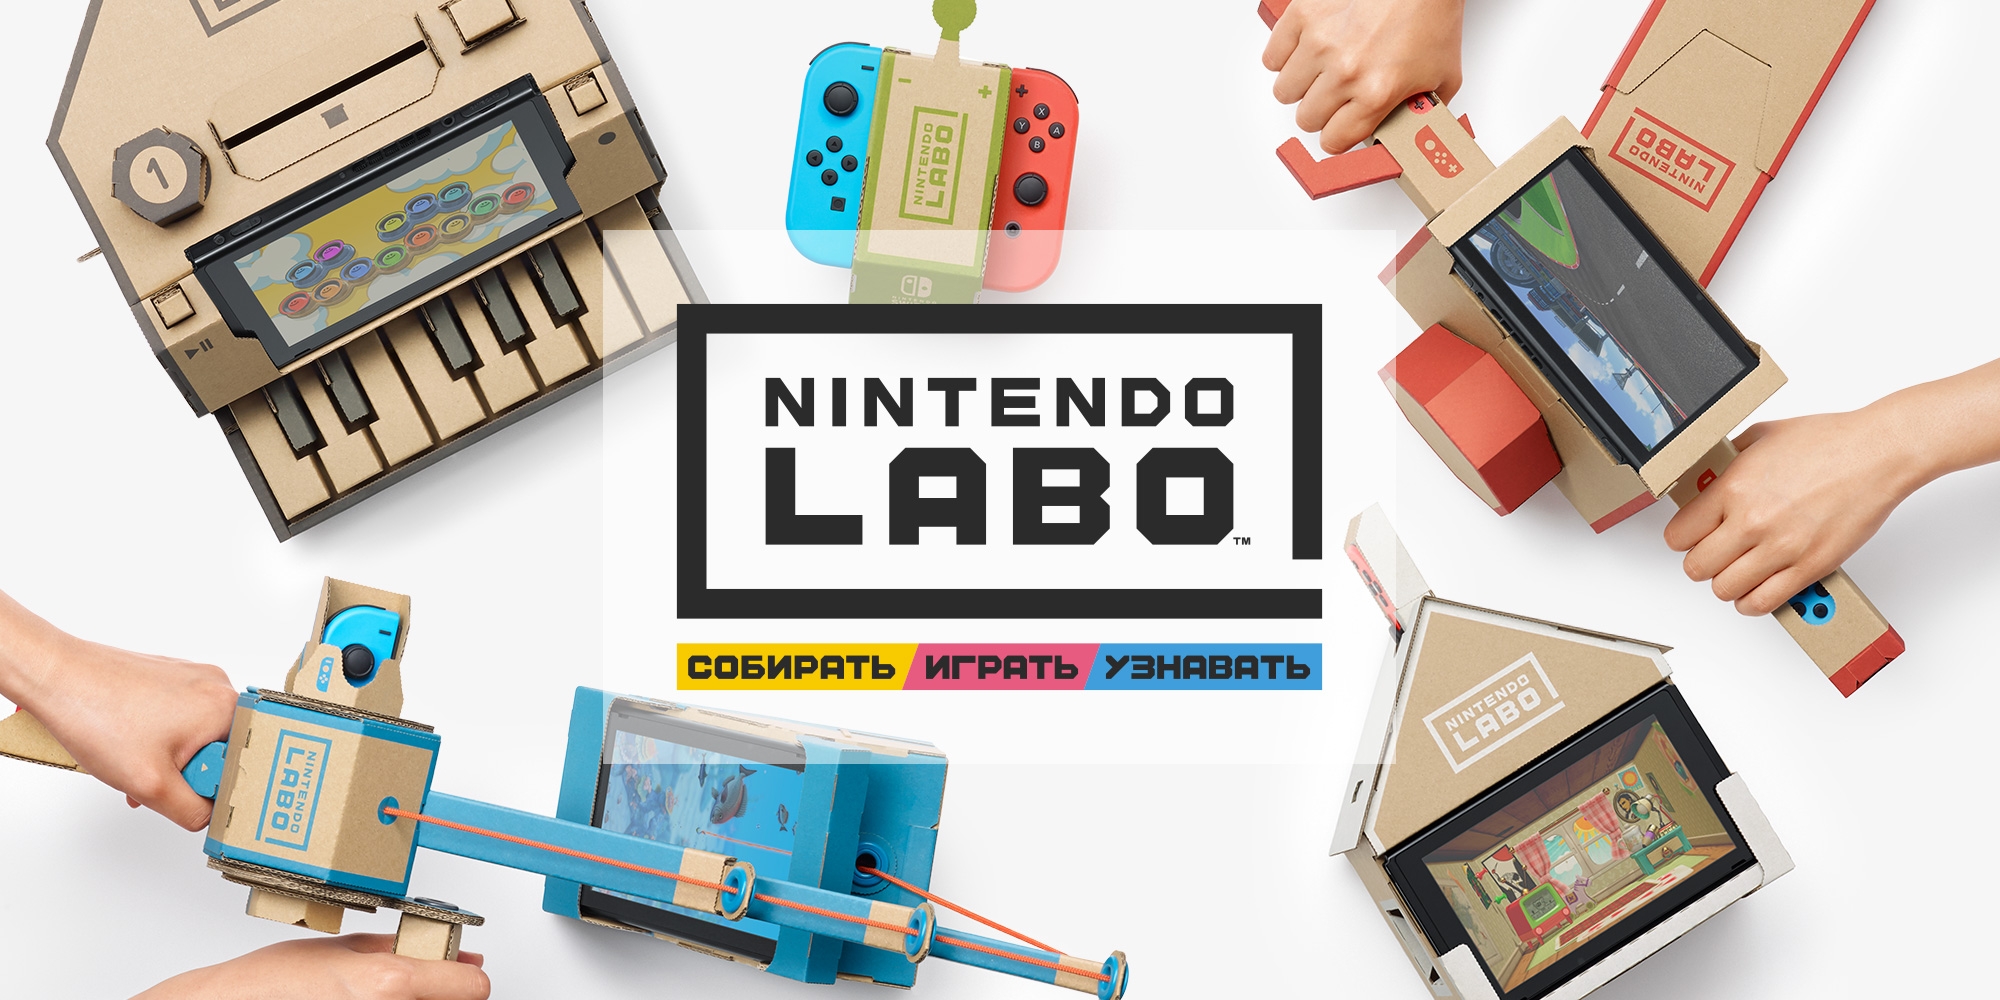 Видео: как создавать и взаимодействовать с устройствами интерактивной платформы для детей Nintendo Labo